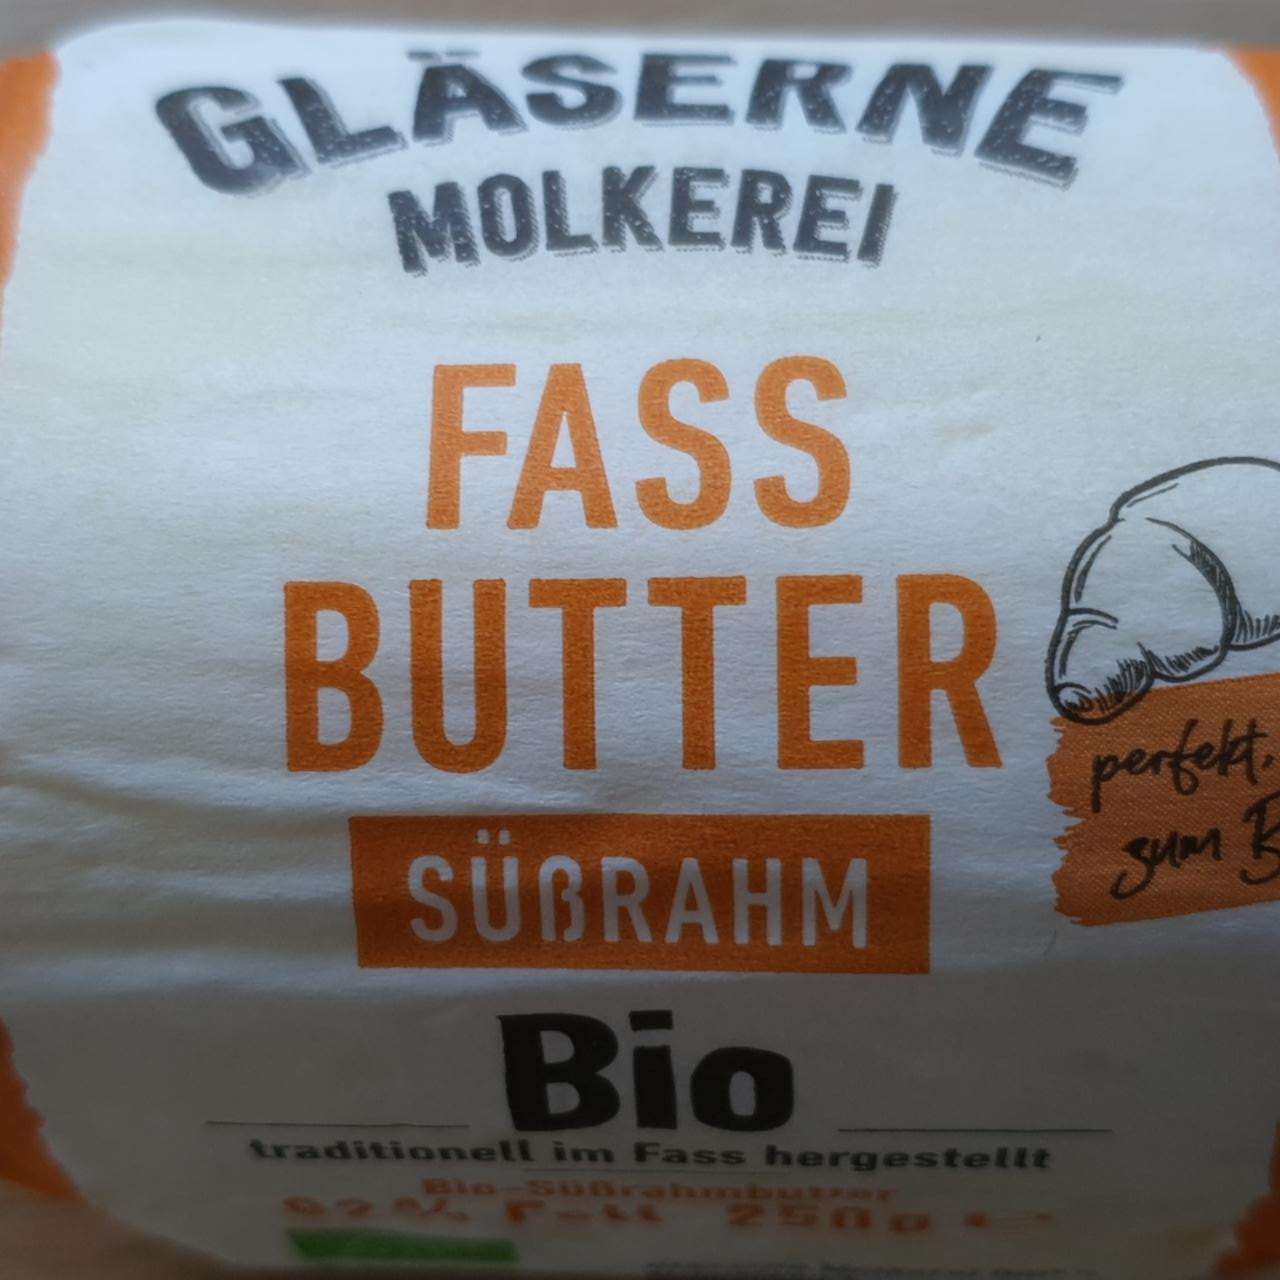 Fotografie - Bio Fast Butter Süßrahm Gläserne Molkerei